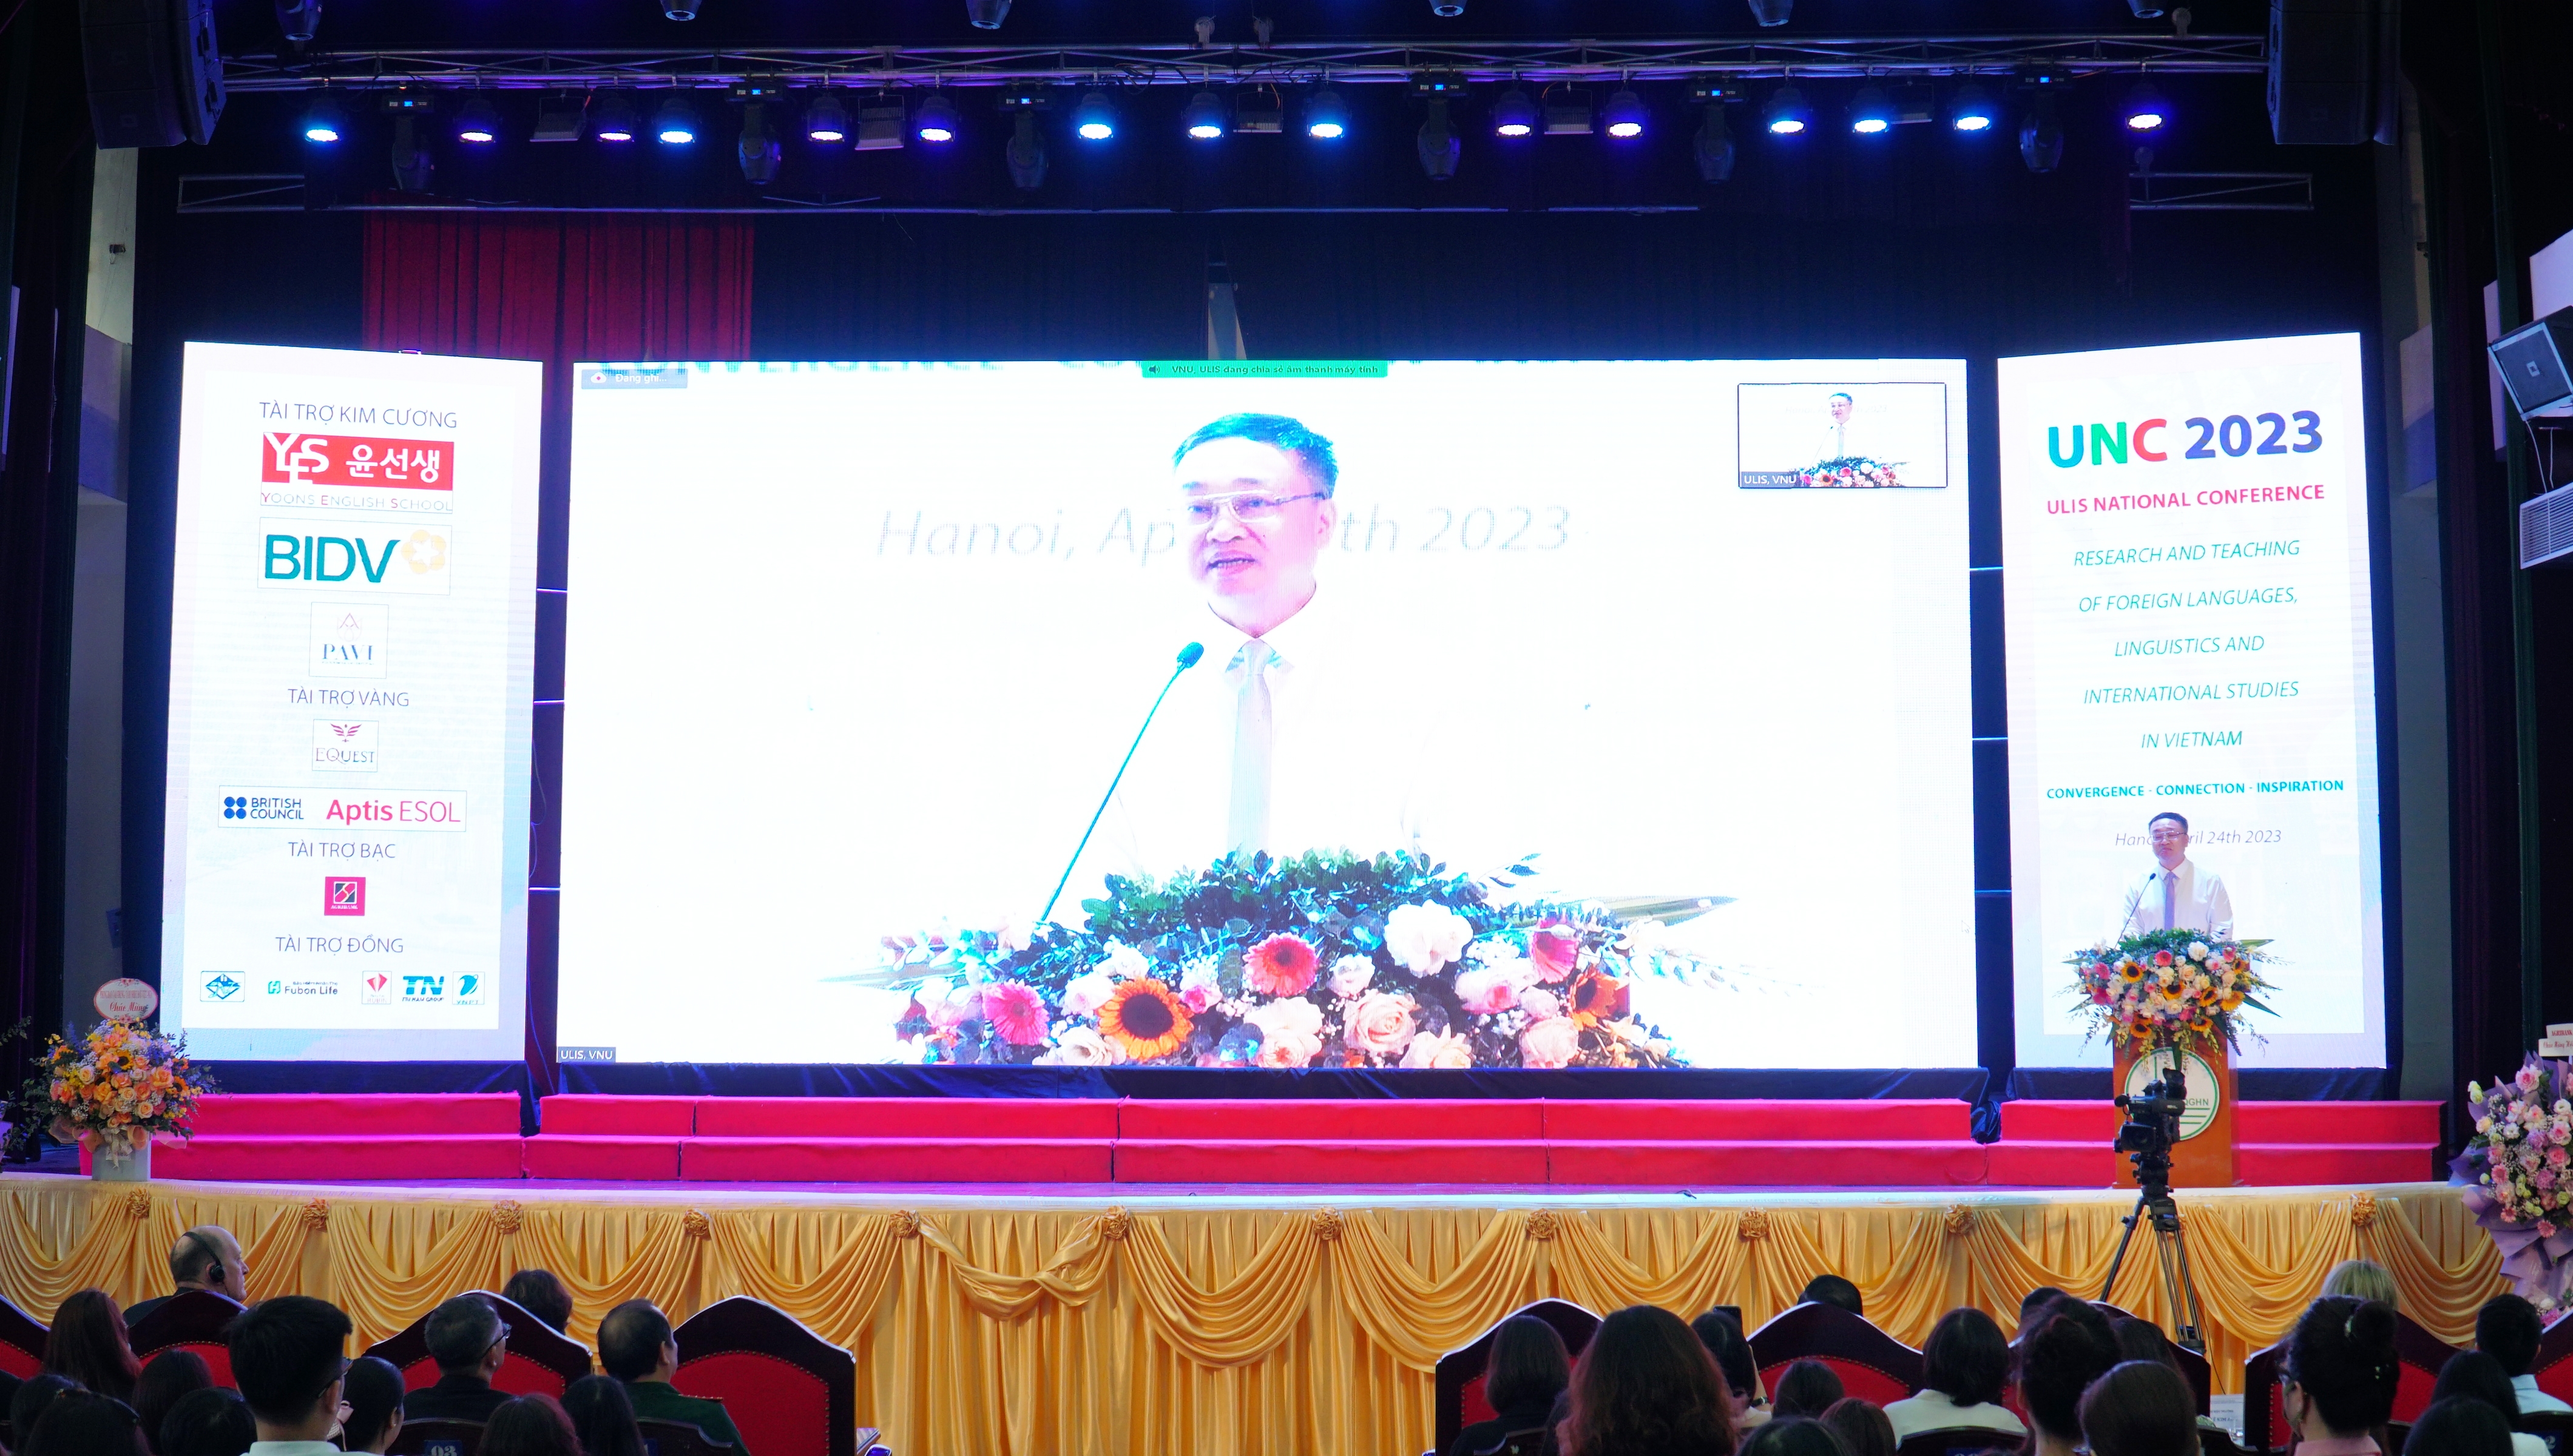 В Ханое прошла национальная научно-практическая конференция на тему «Исследование и преподавание иностранных языков, лингвистики и международных исследований во Вьетнаме»